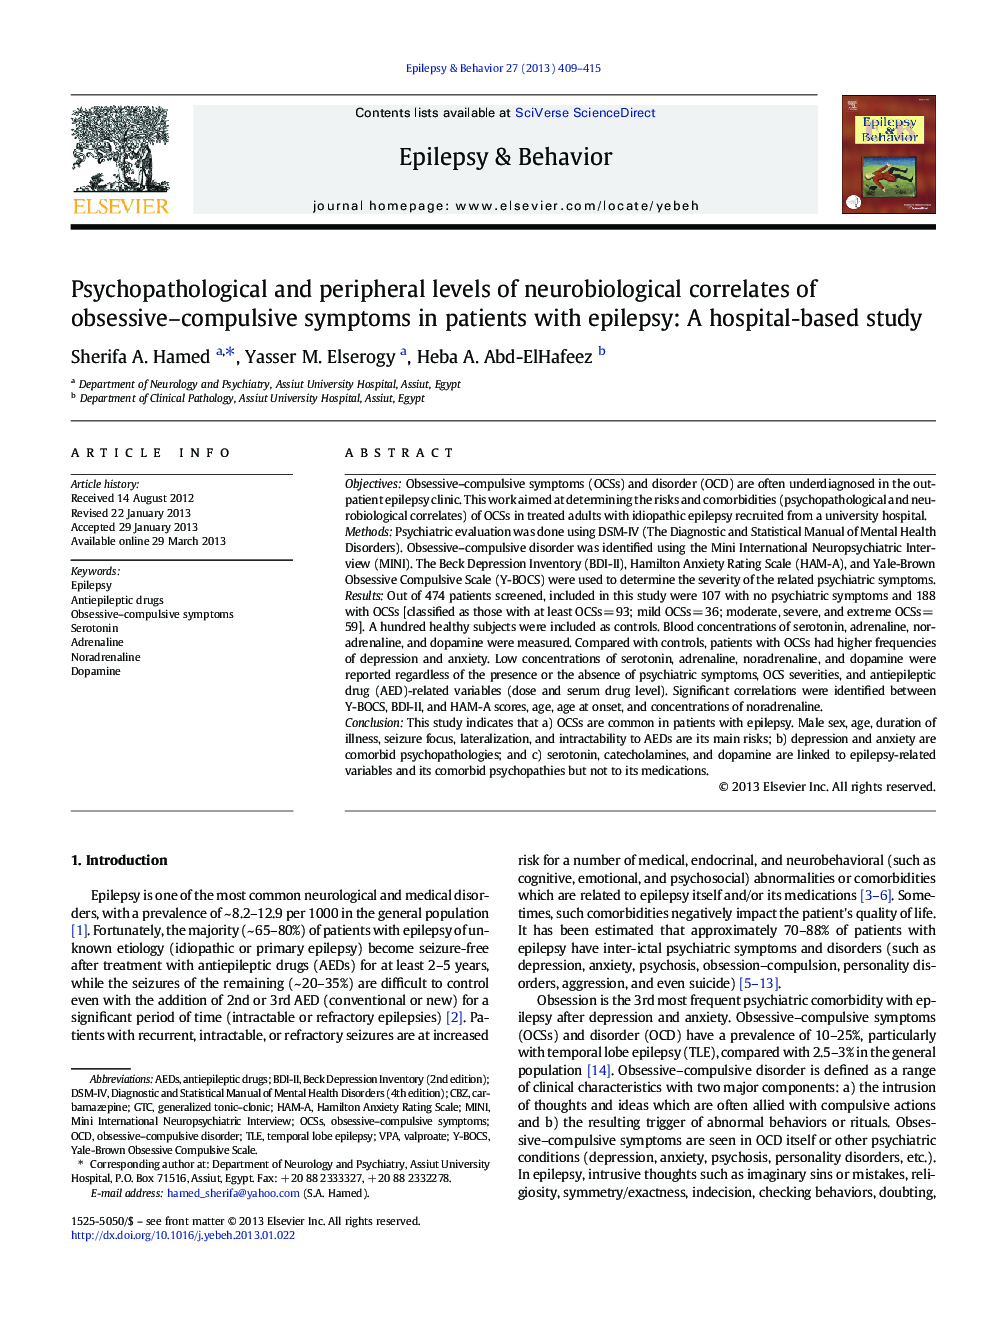 سطوح روحی-پاتولوژیک و محیطی ارتباطات نوروبیولوژیکی علائم وسواسی-اجباری در بیماران مبتلا به صرع: یک مطالعه مبتنی بر بیمارستان 